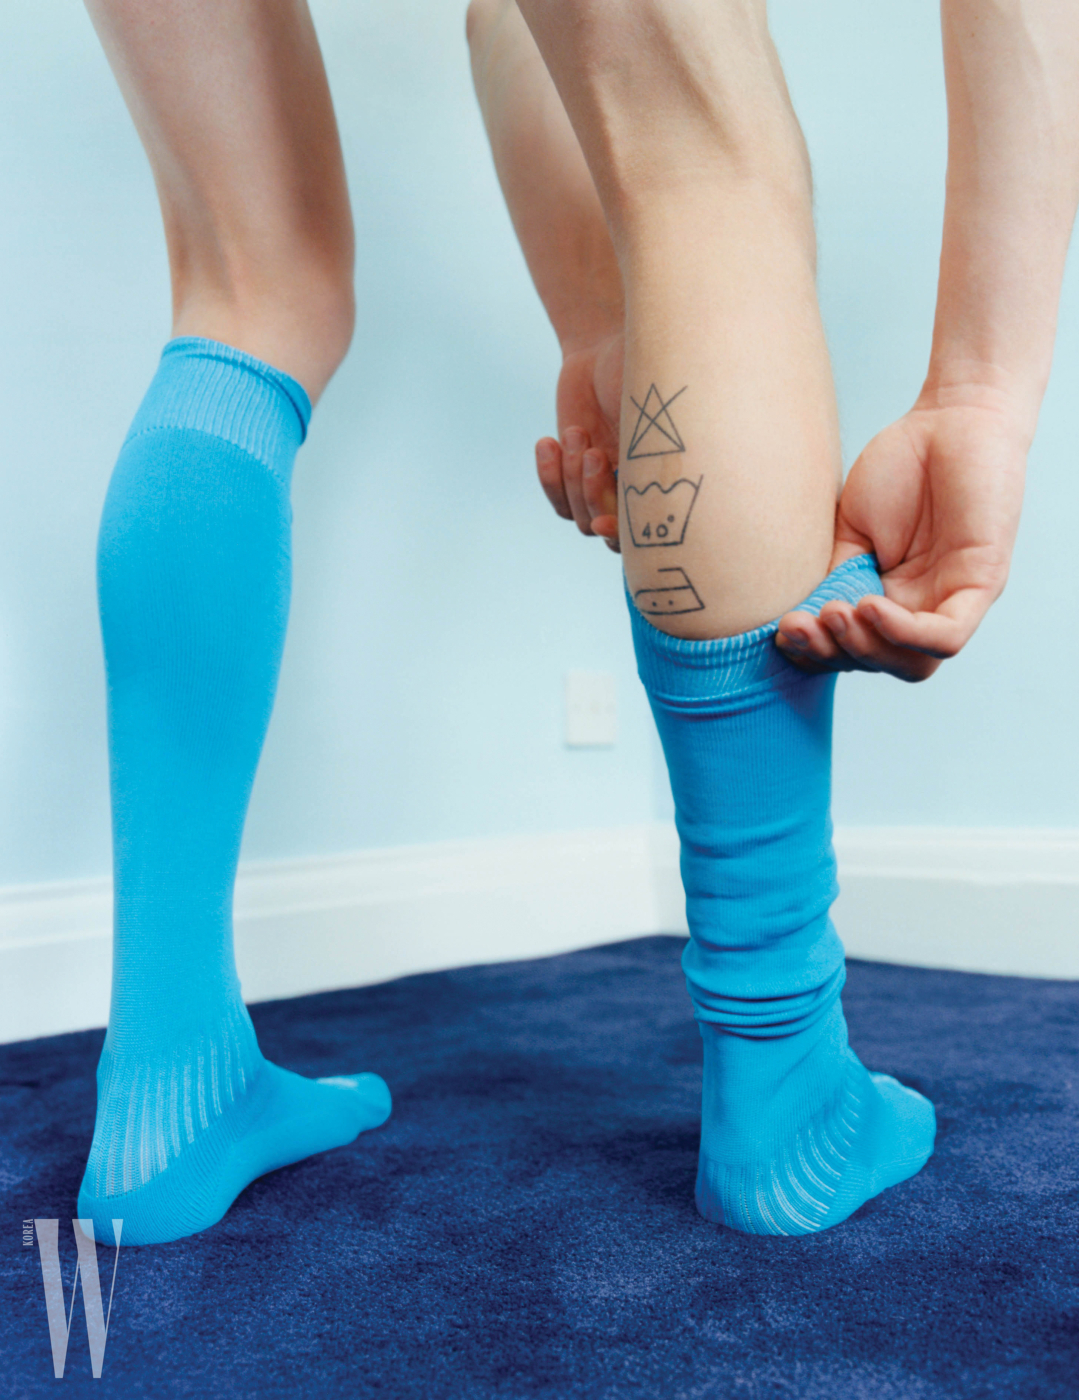 [보도스틸]Boy in Socks in Dust Magazine, London, 2017, C-type Print, 72 x 93 cm  Coco Capitan